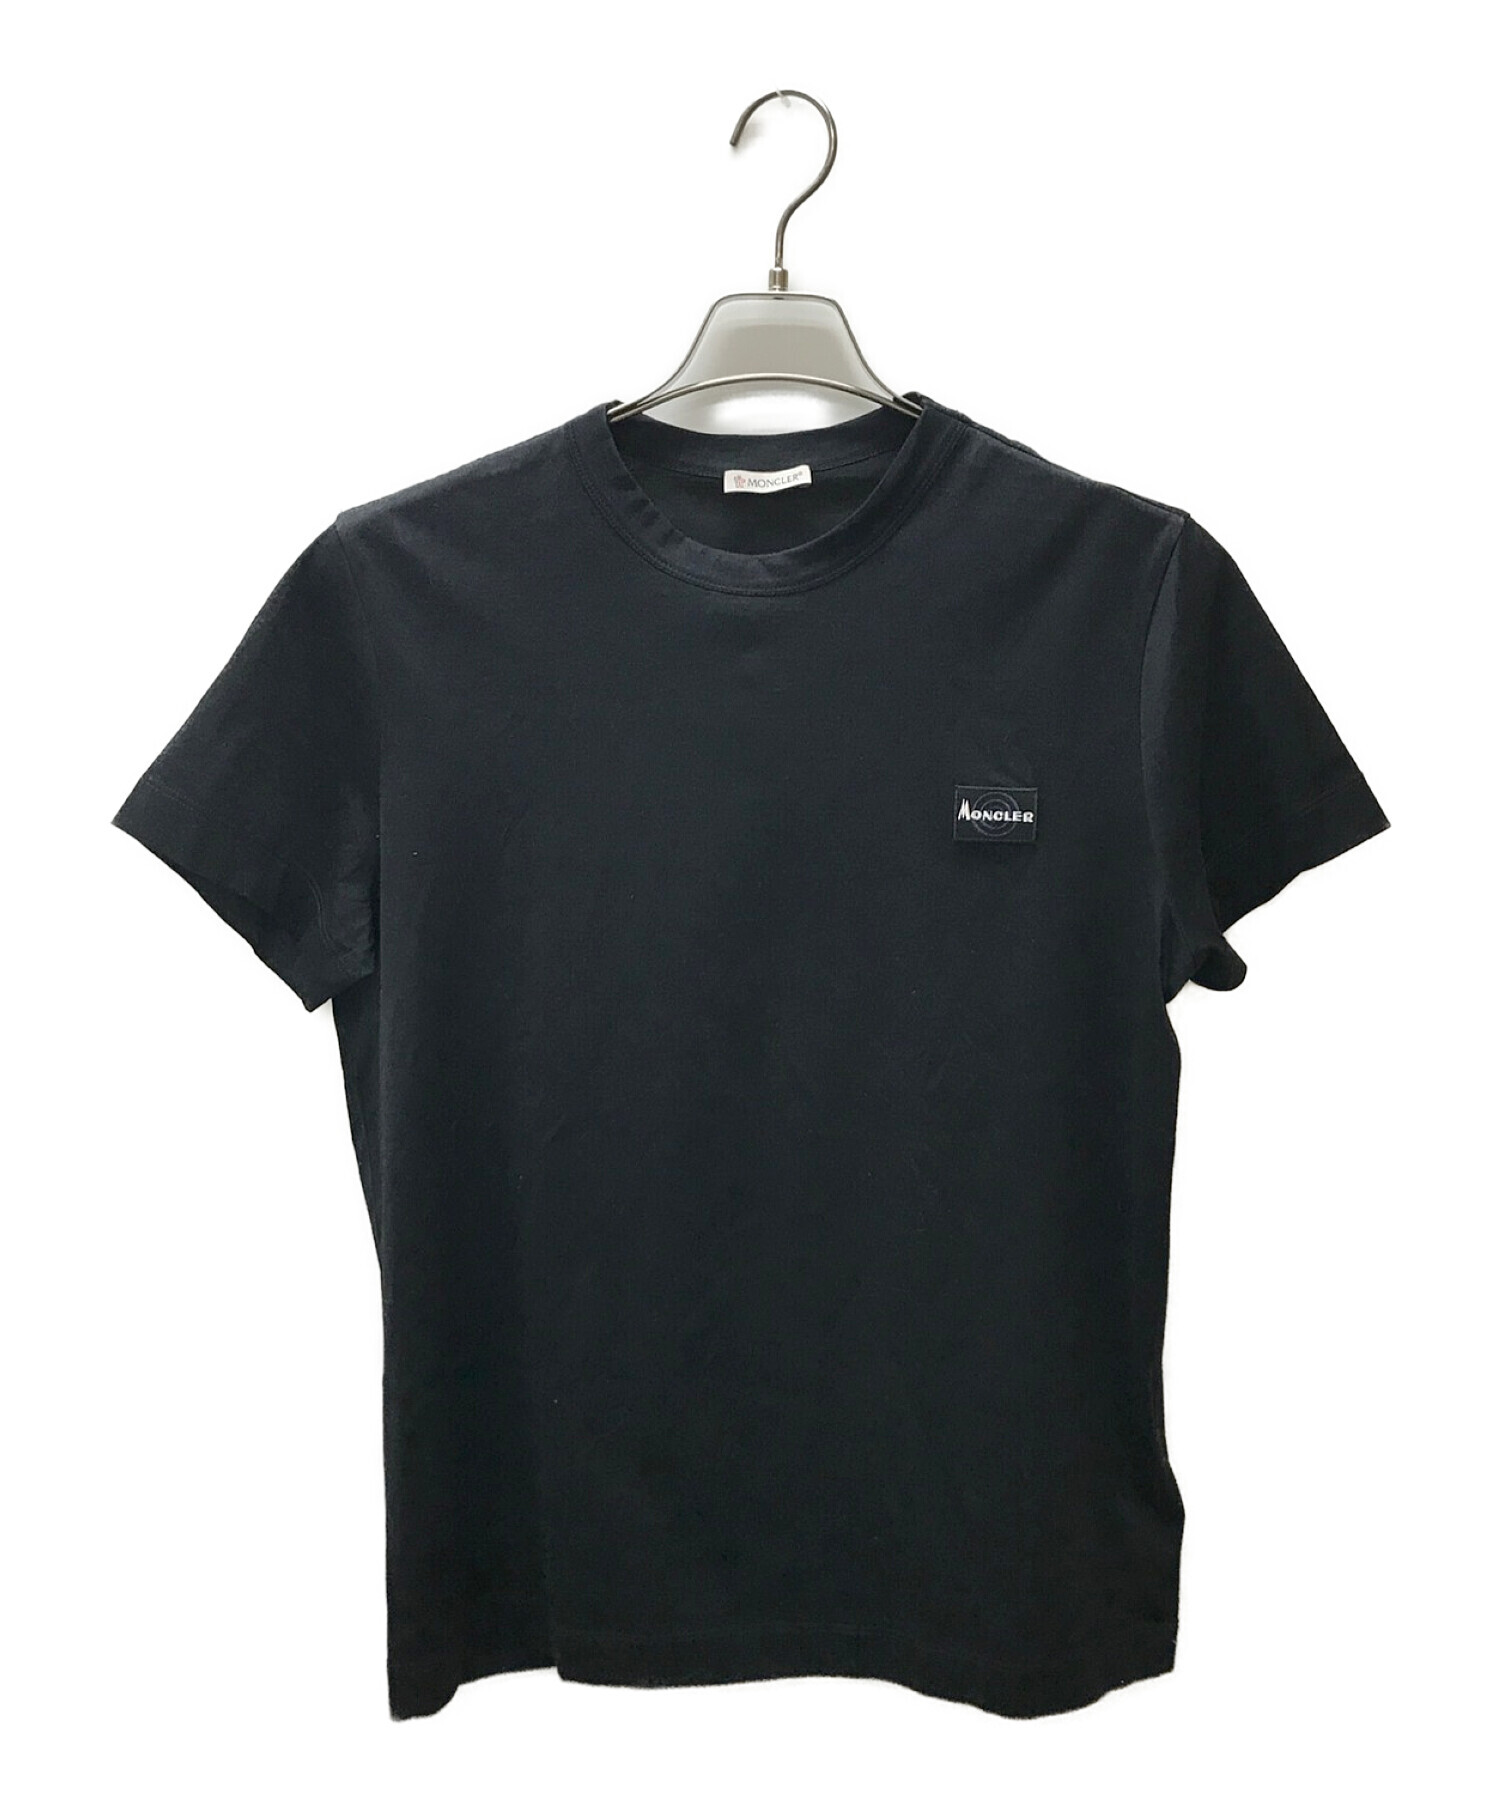 MONCLER (モンクレール) maglia t-shirt ネイビー サイズ:M